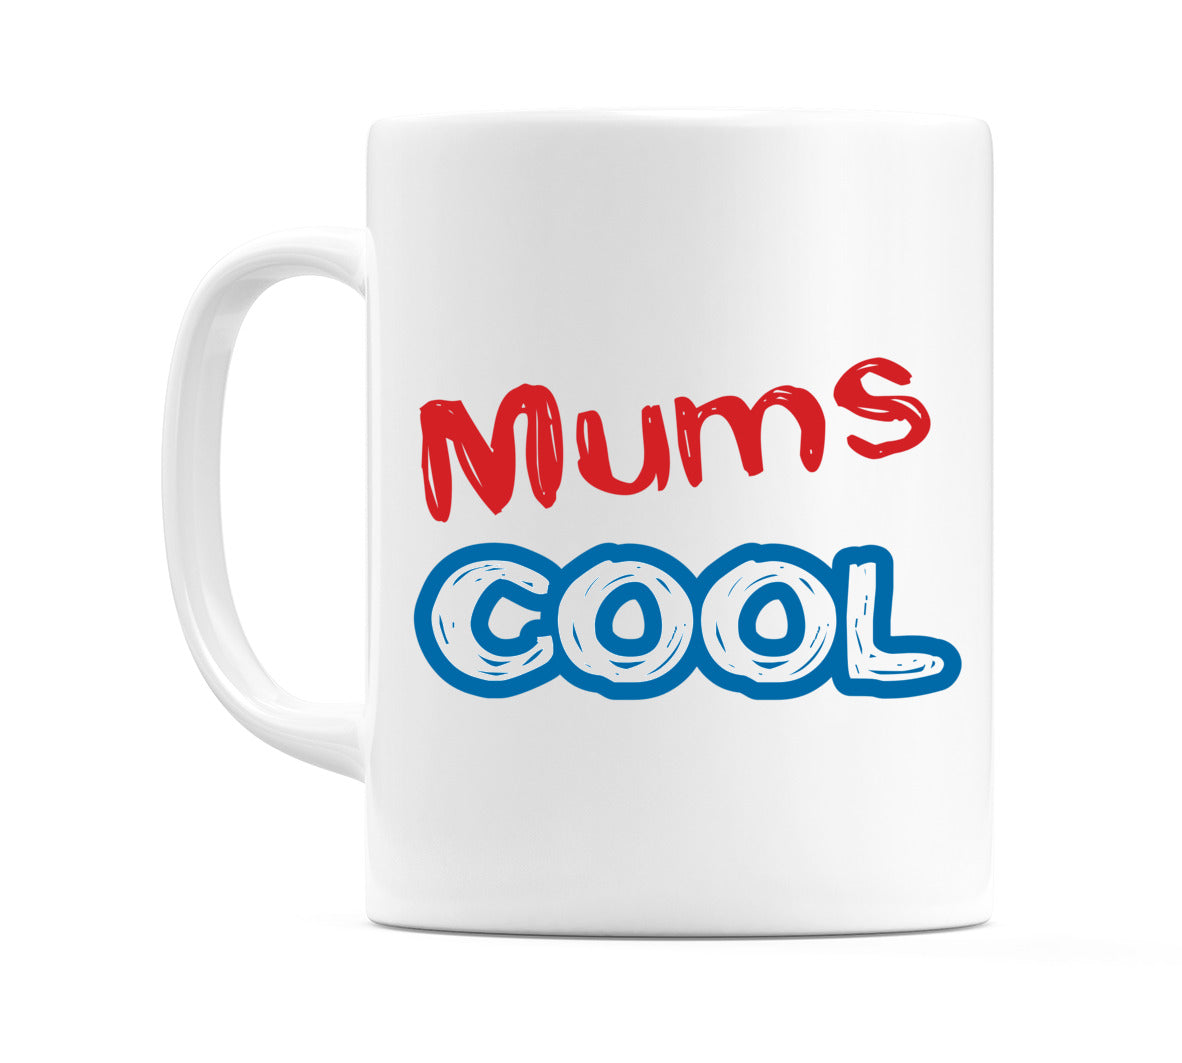 Mums Cool Mug